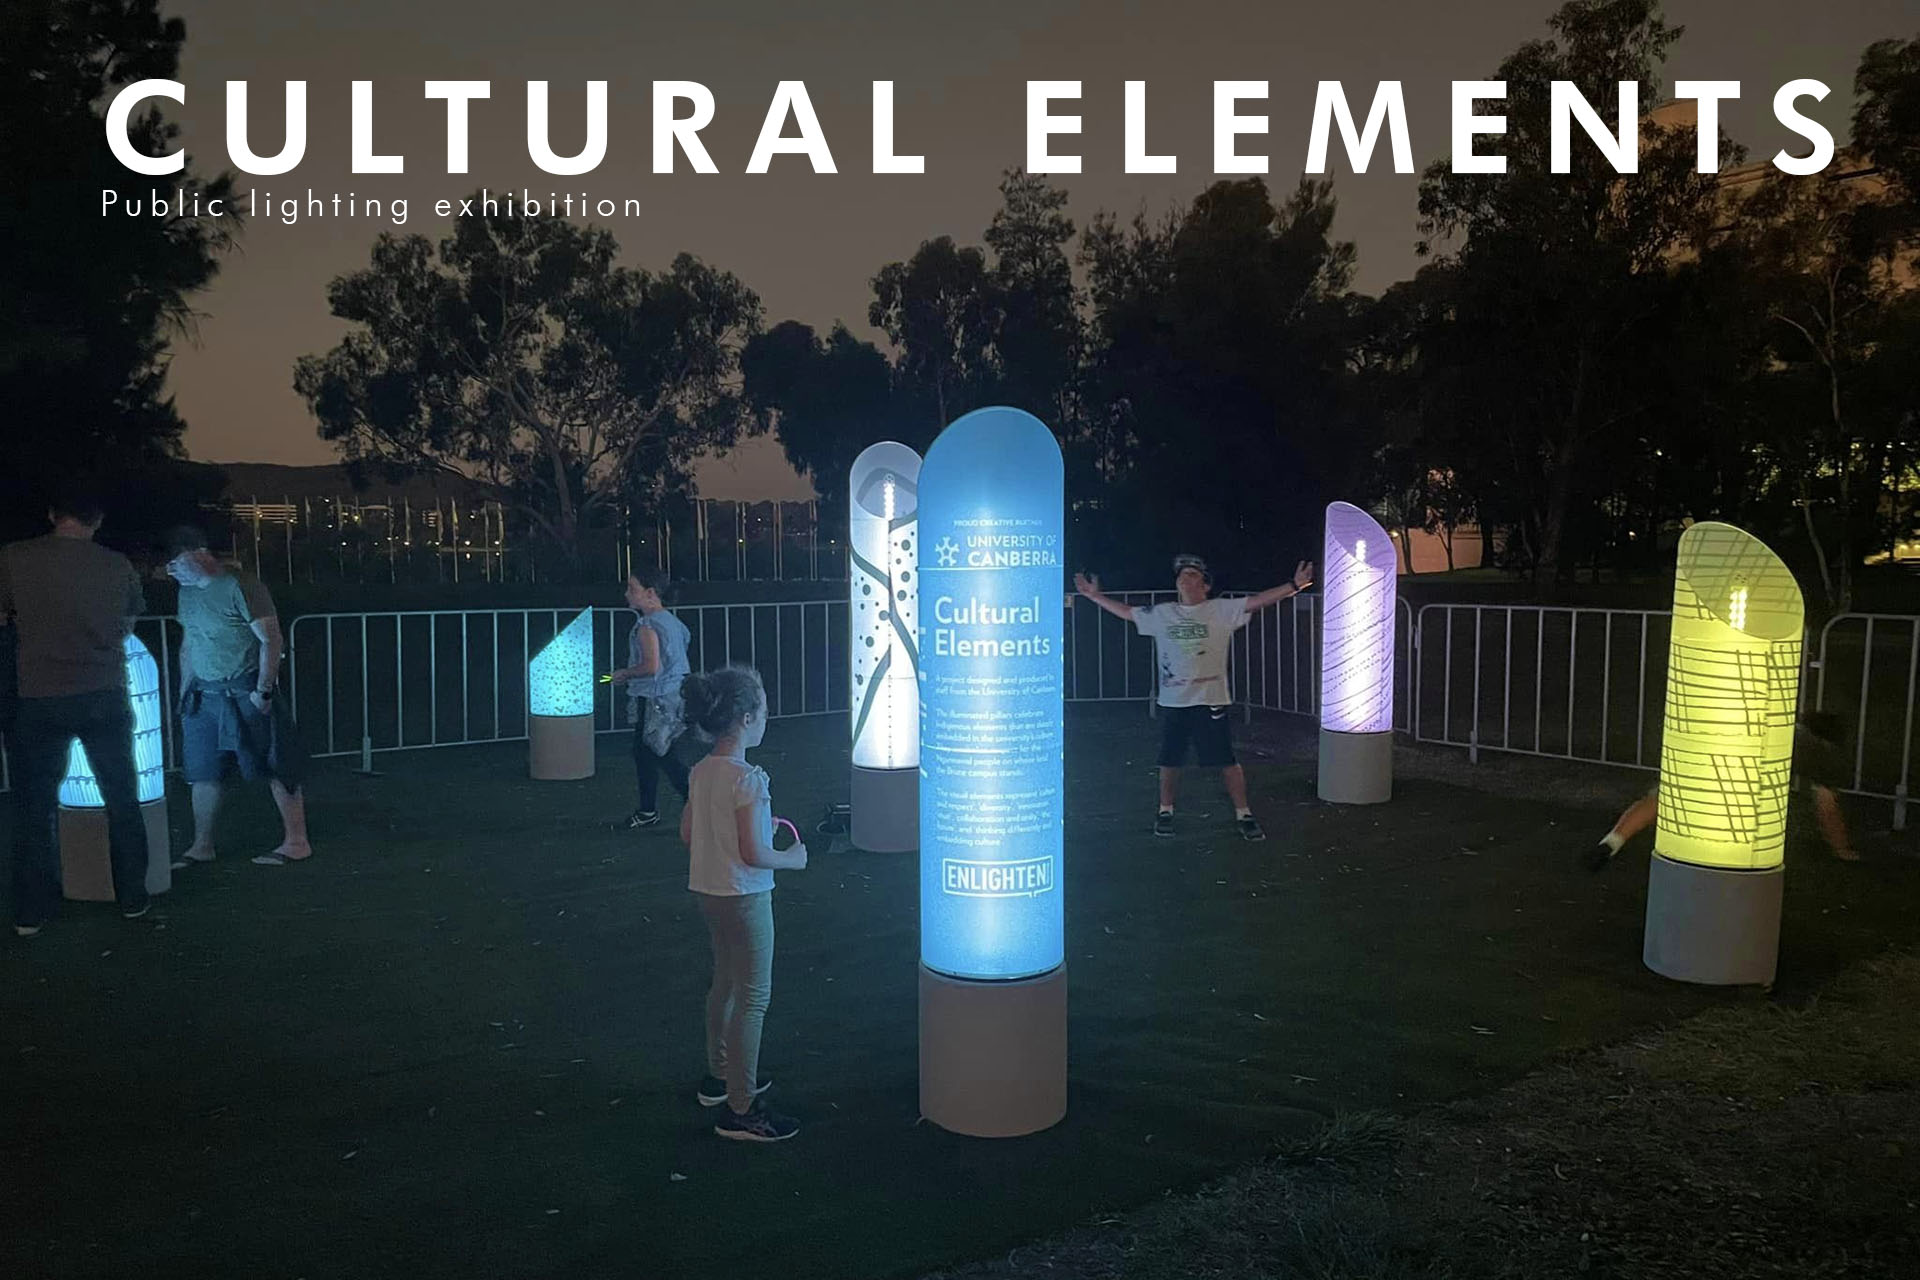 Cultural Elements public lighting display.